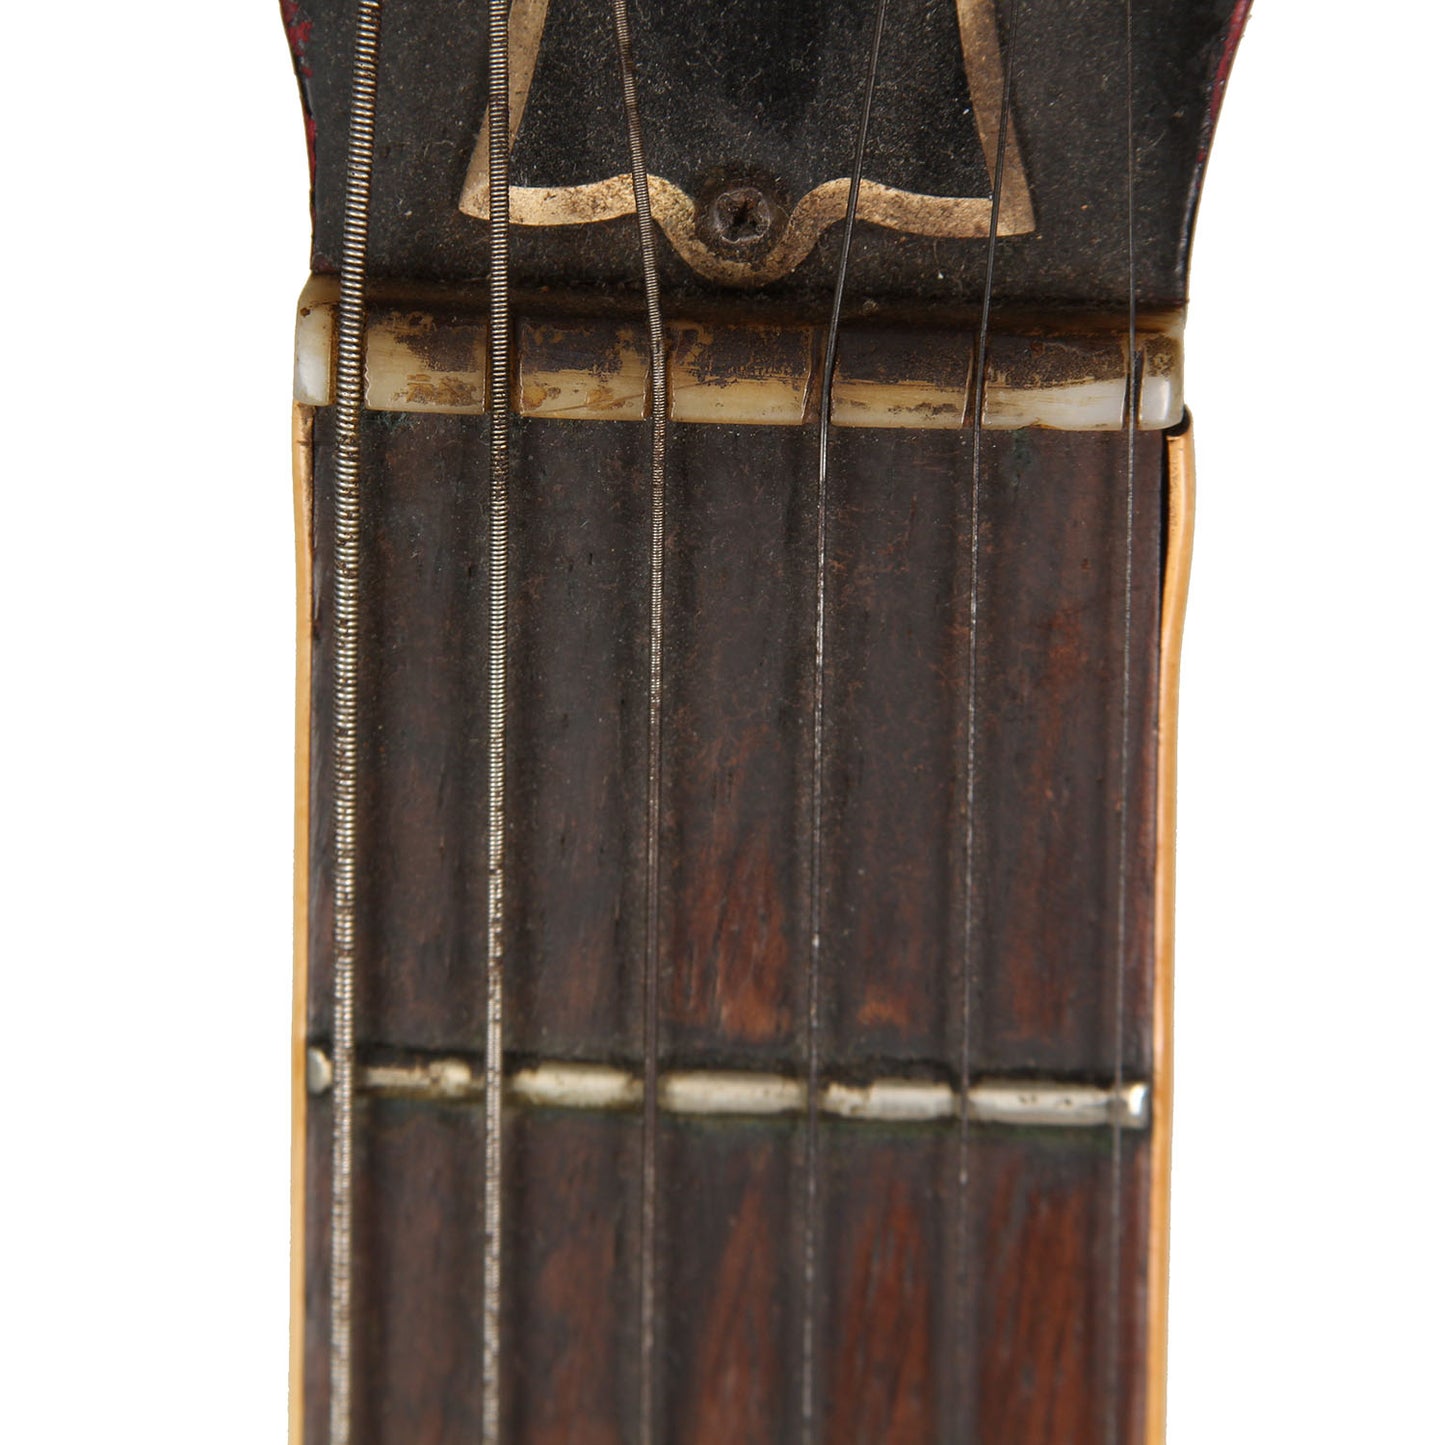 1961 Dot Neck Gibson ES-330 "Smokey"